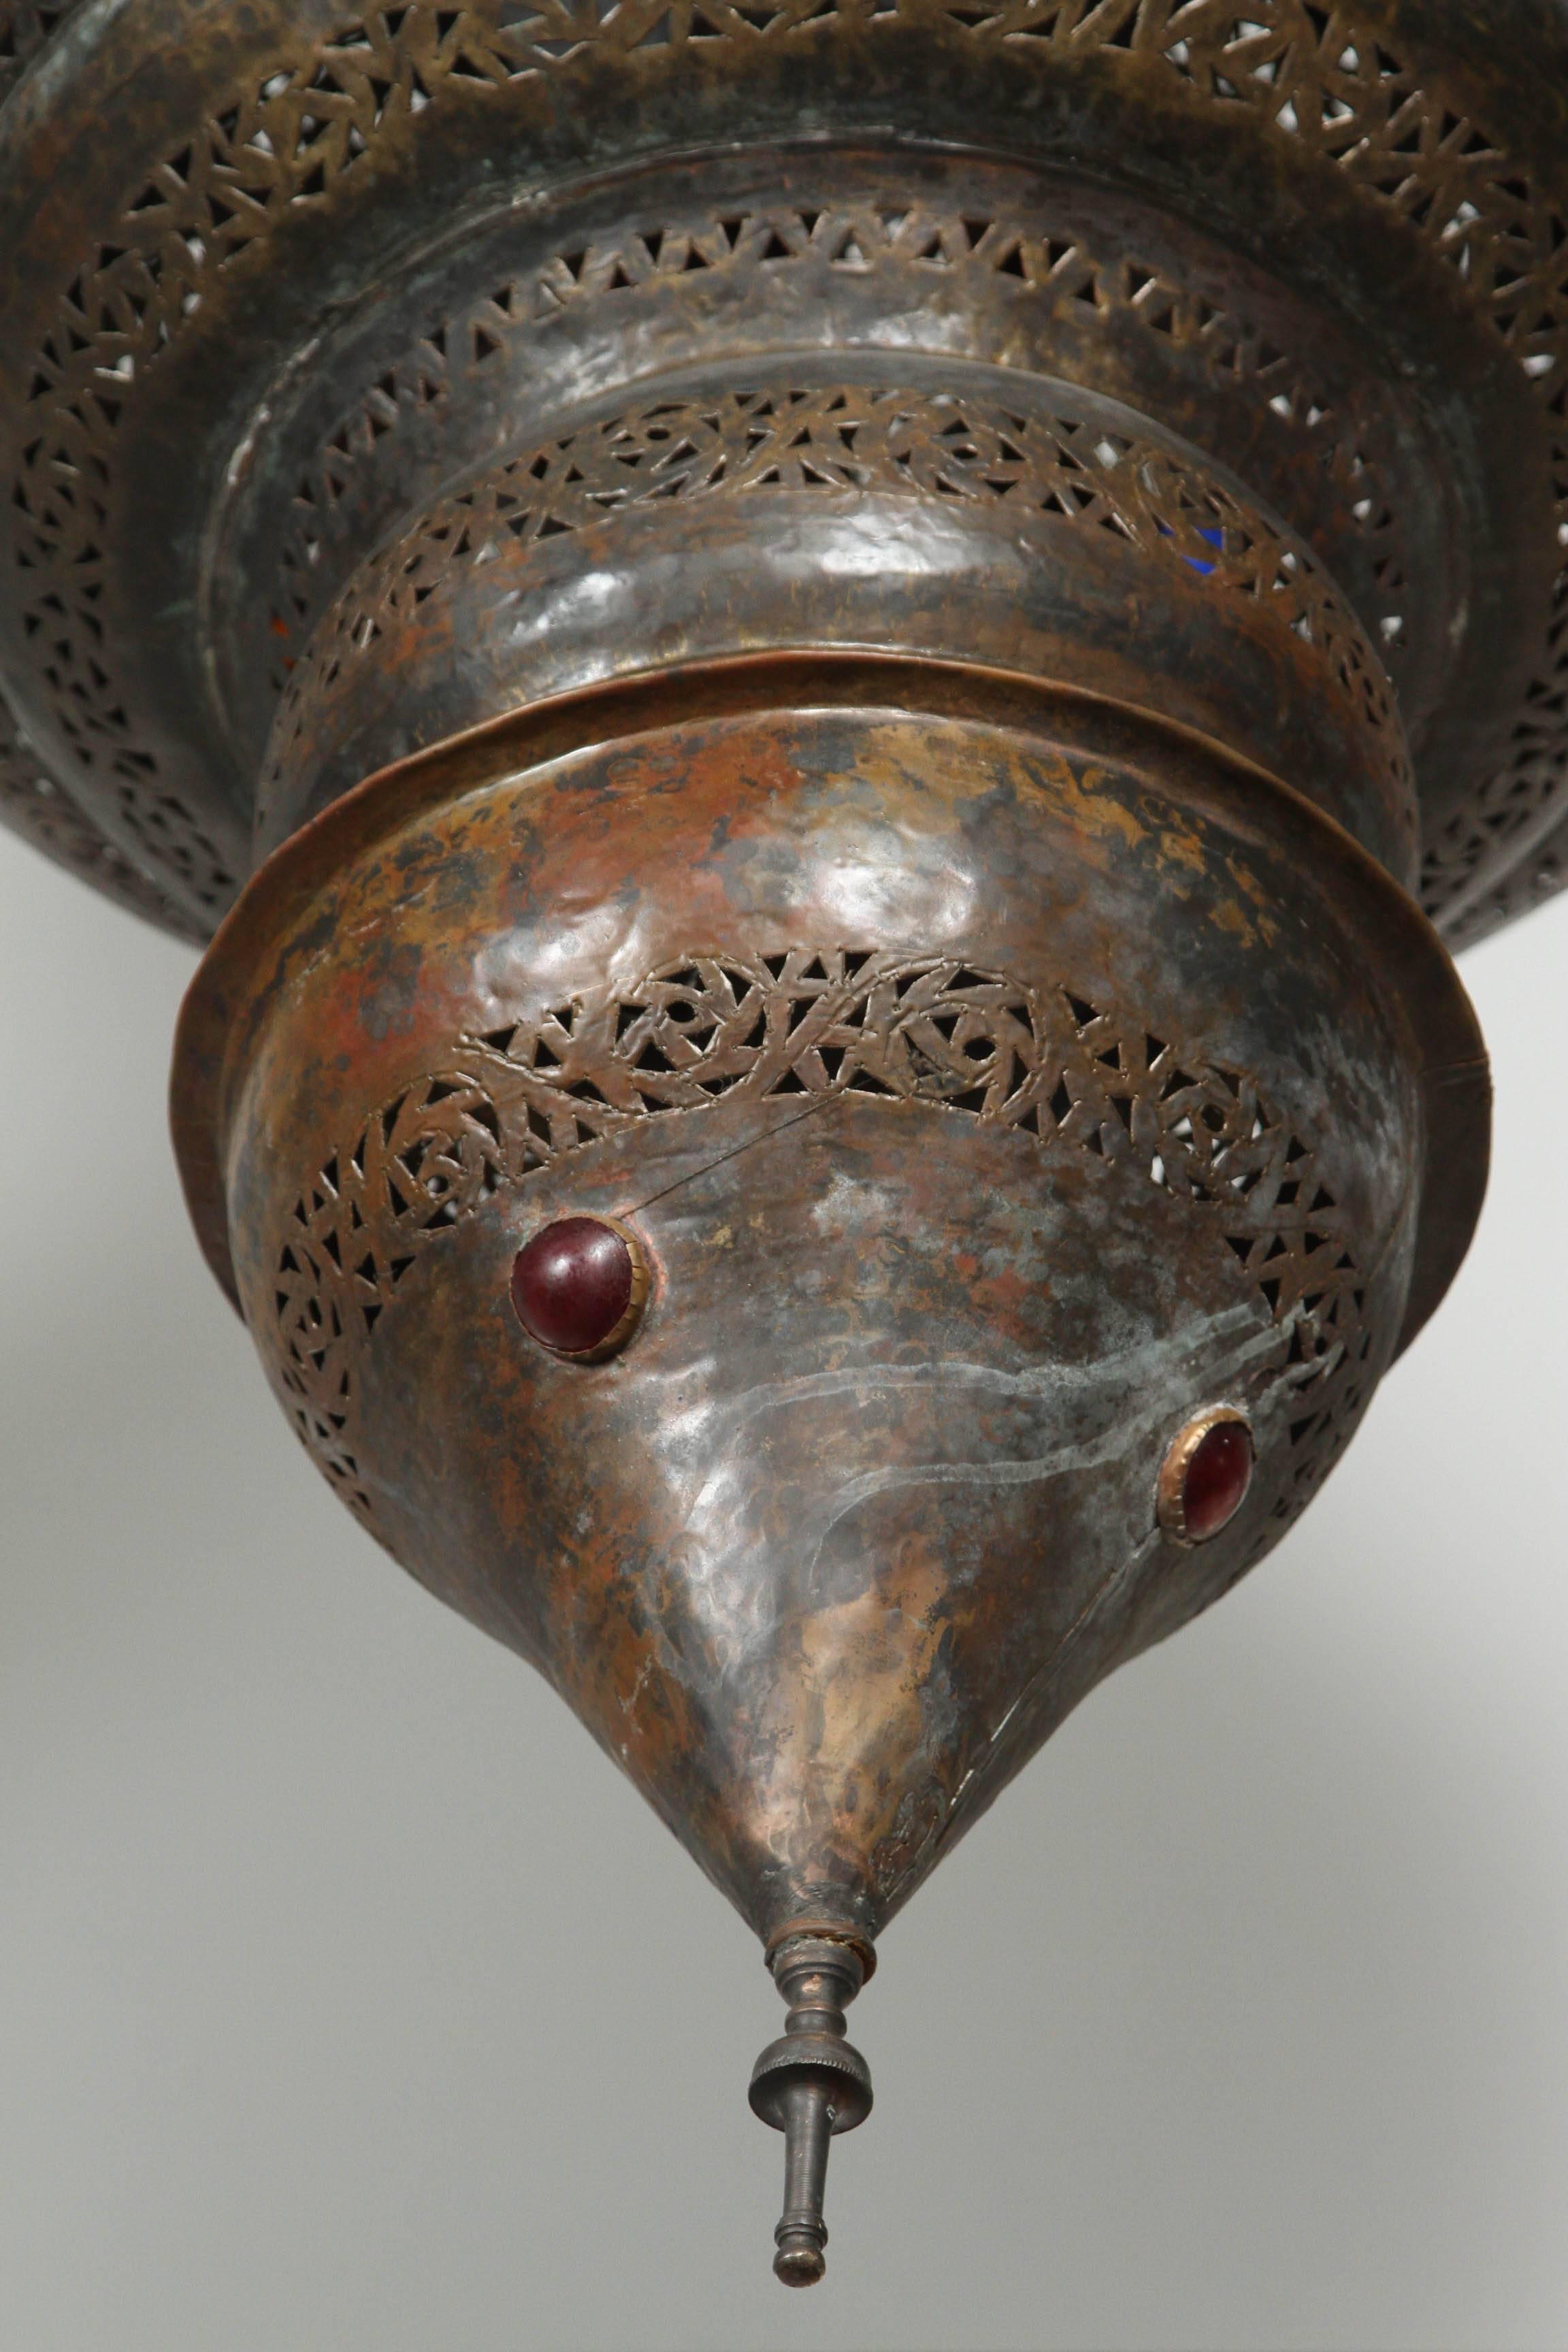 Grand lustre marocain en bronze patiné.
Ce grand lustre mauresque est délicatement sculpté et martelé à la main avec des motifs floraux mauresques, incrustés de petits bijoux en verre coloré.
Couleur bronze huilé antique.
Le luminaire a une hauteur